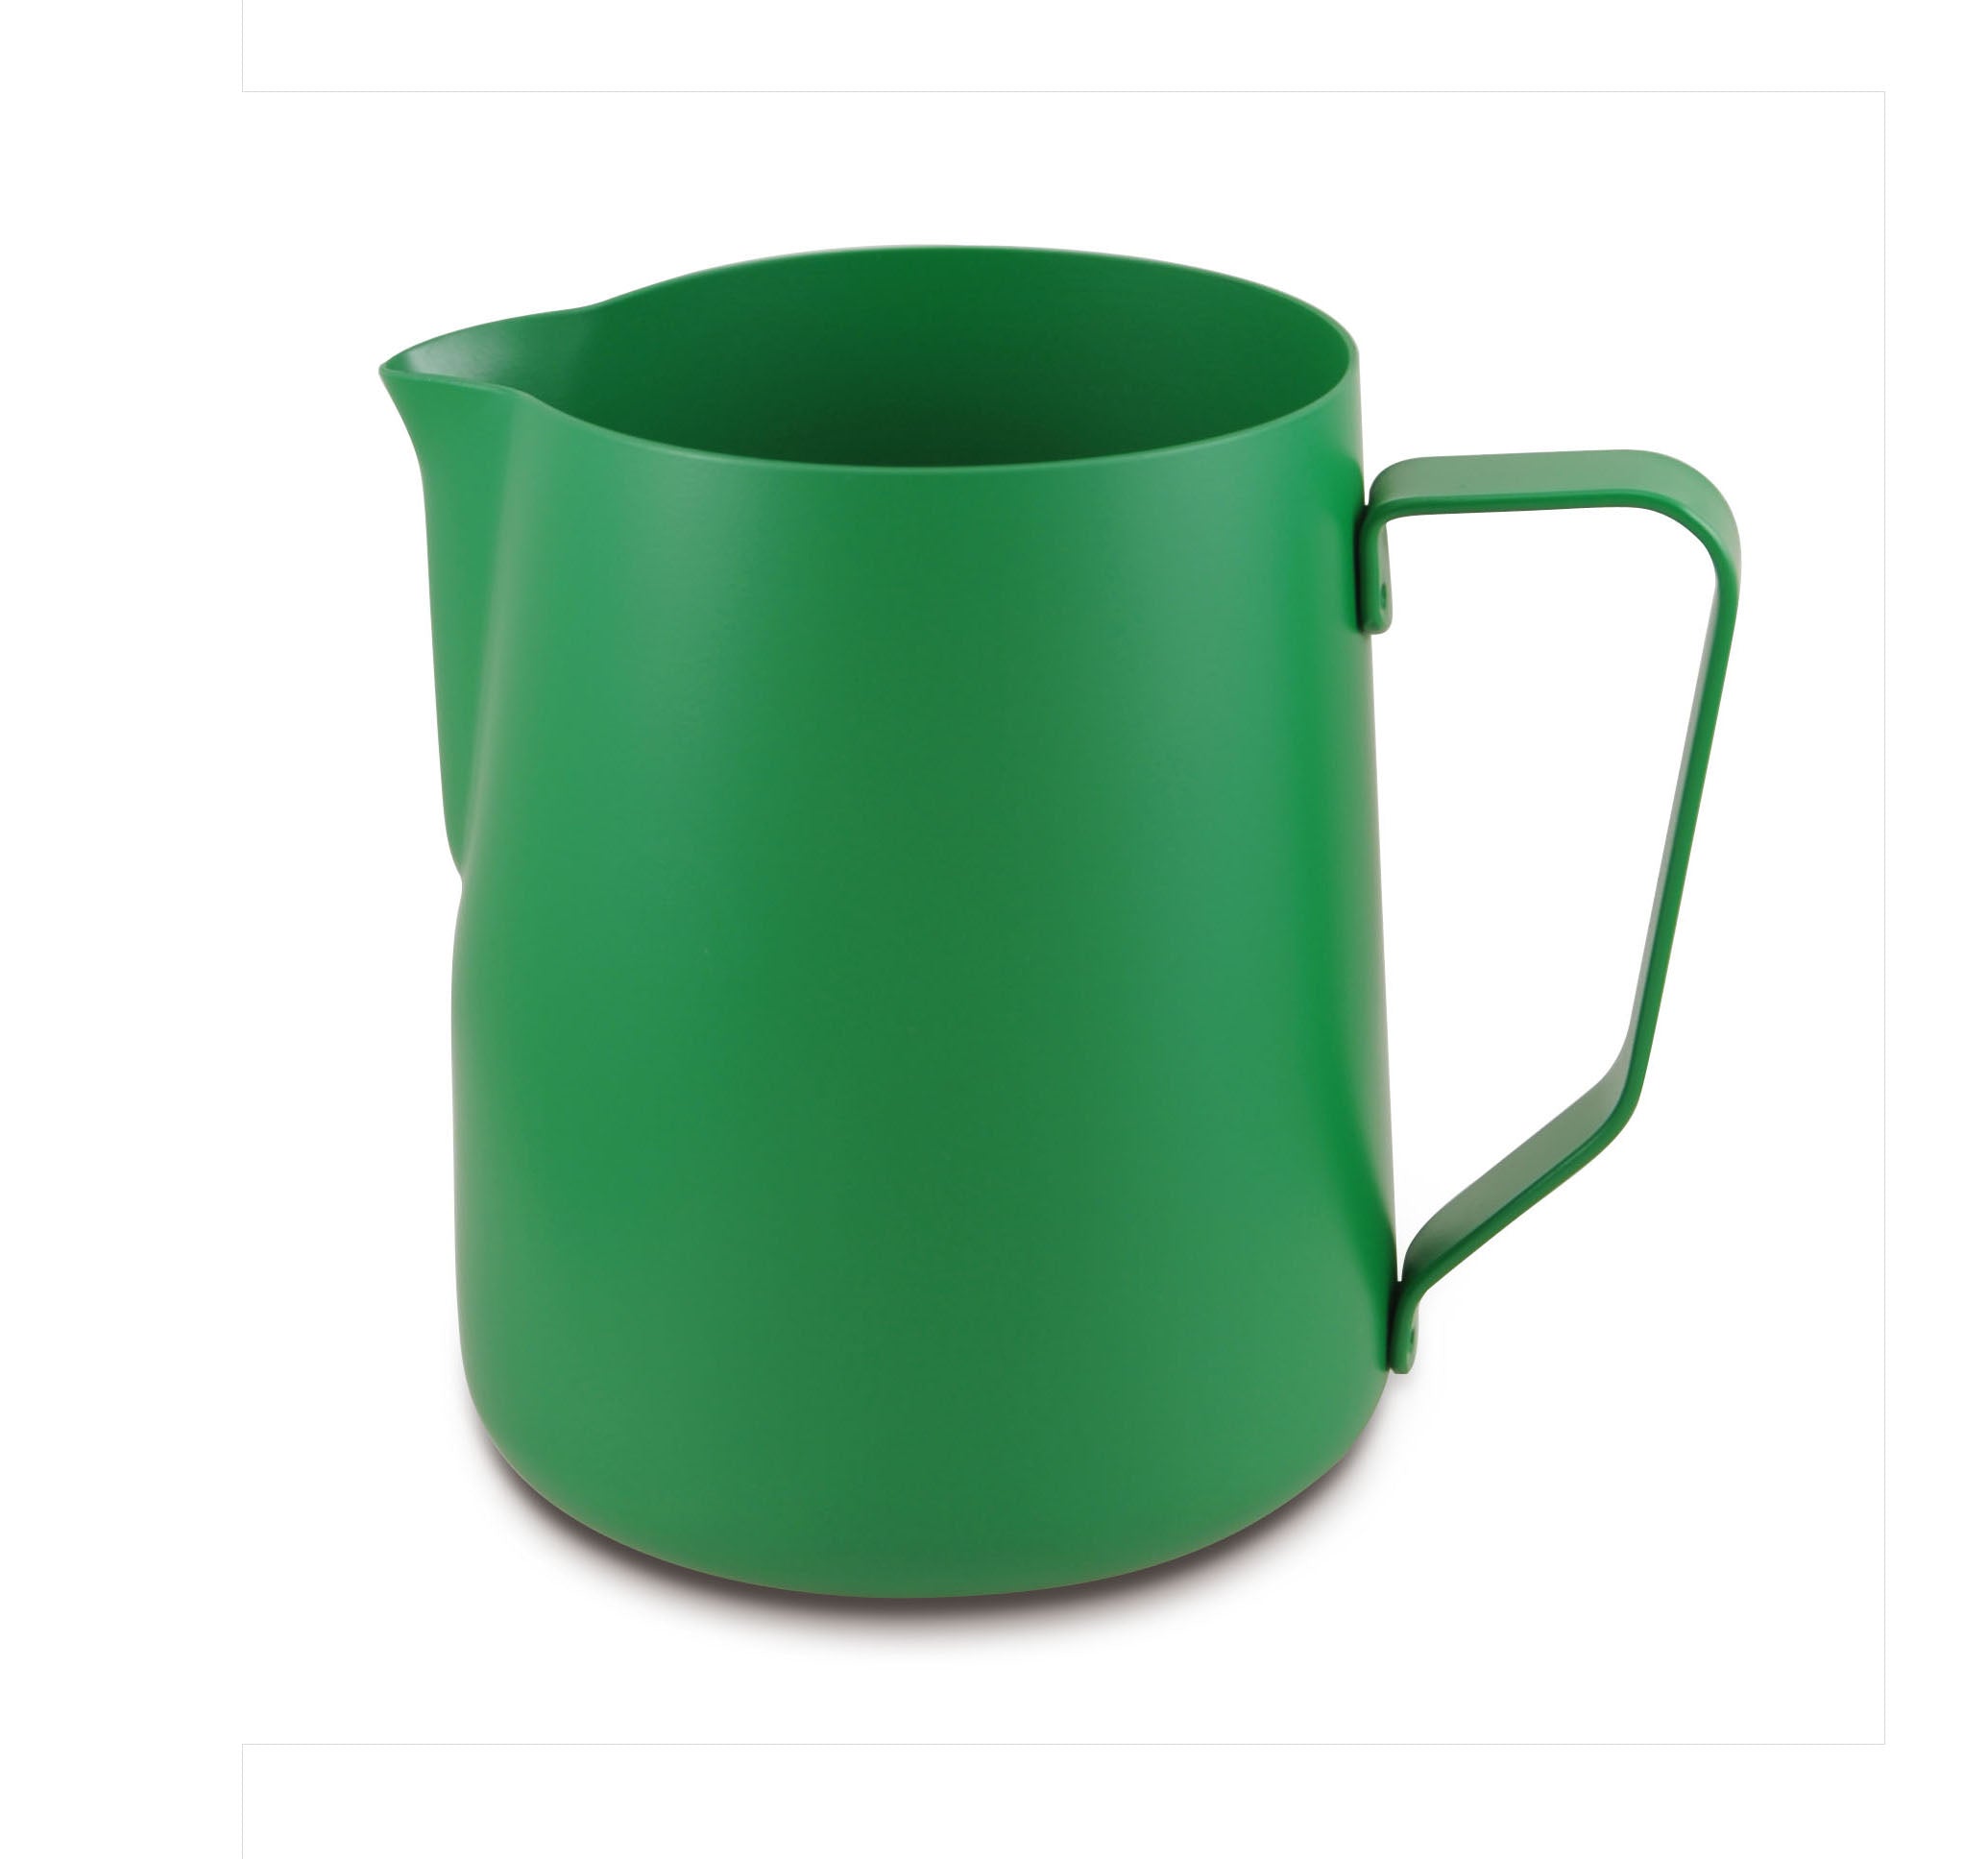 Lattiera per cappuccino in acciaio inox | Colore verde | Capacità 600 ml